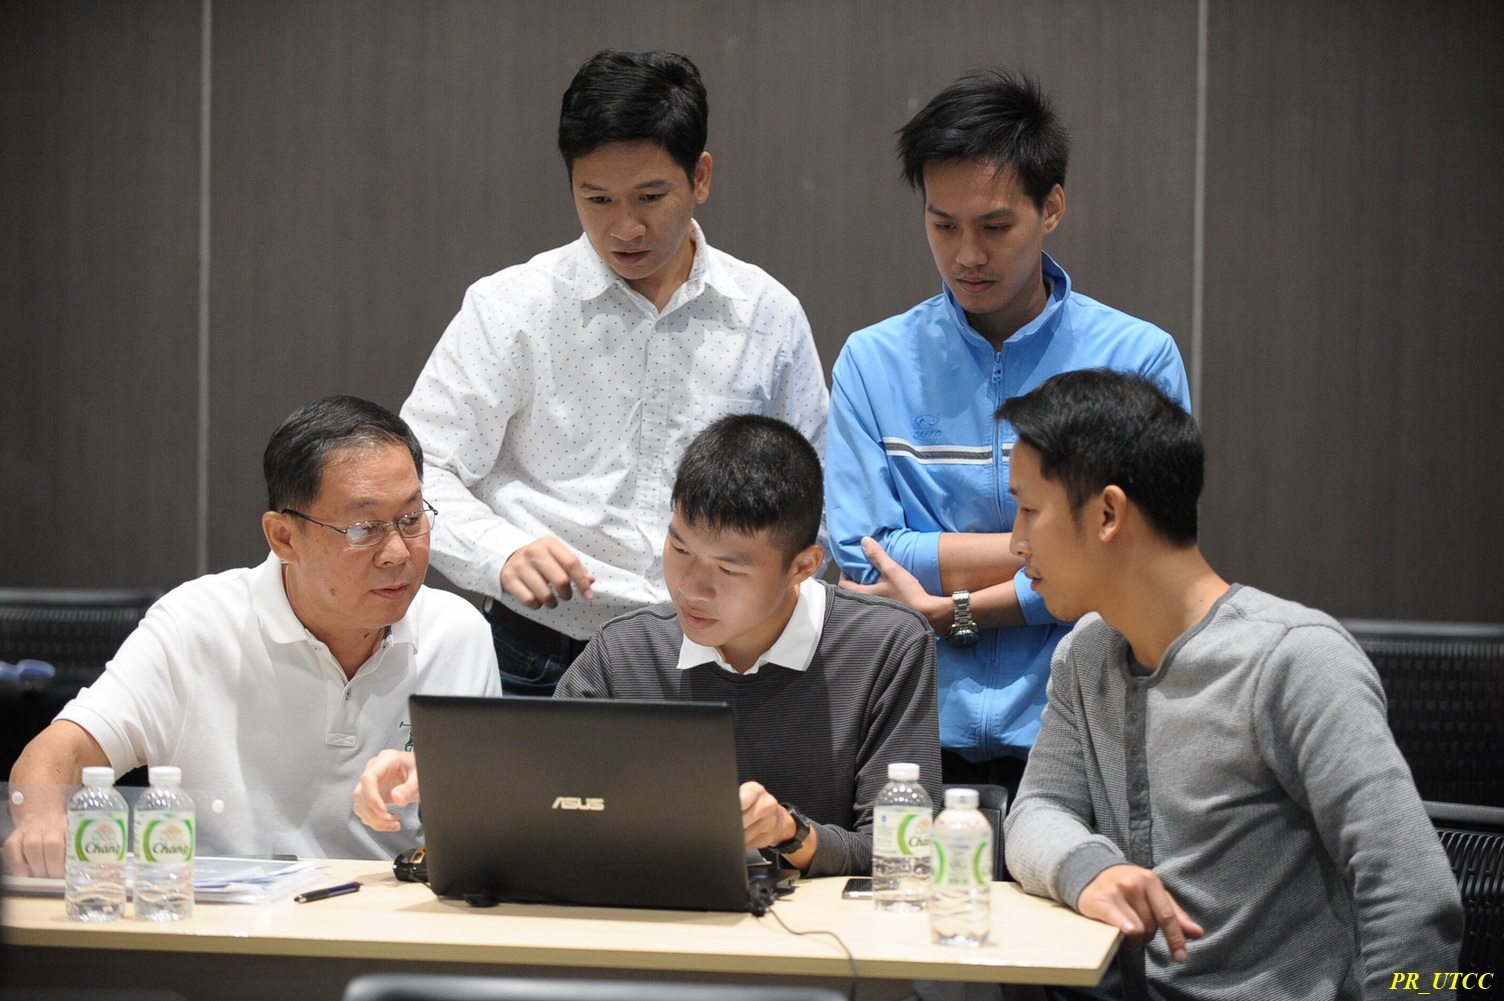 บรรยากาศการอบรบกึ่ง Workshop Alibaba ของ eTouch ร่วมกับ YellowPages